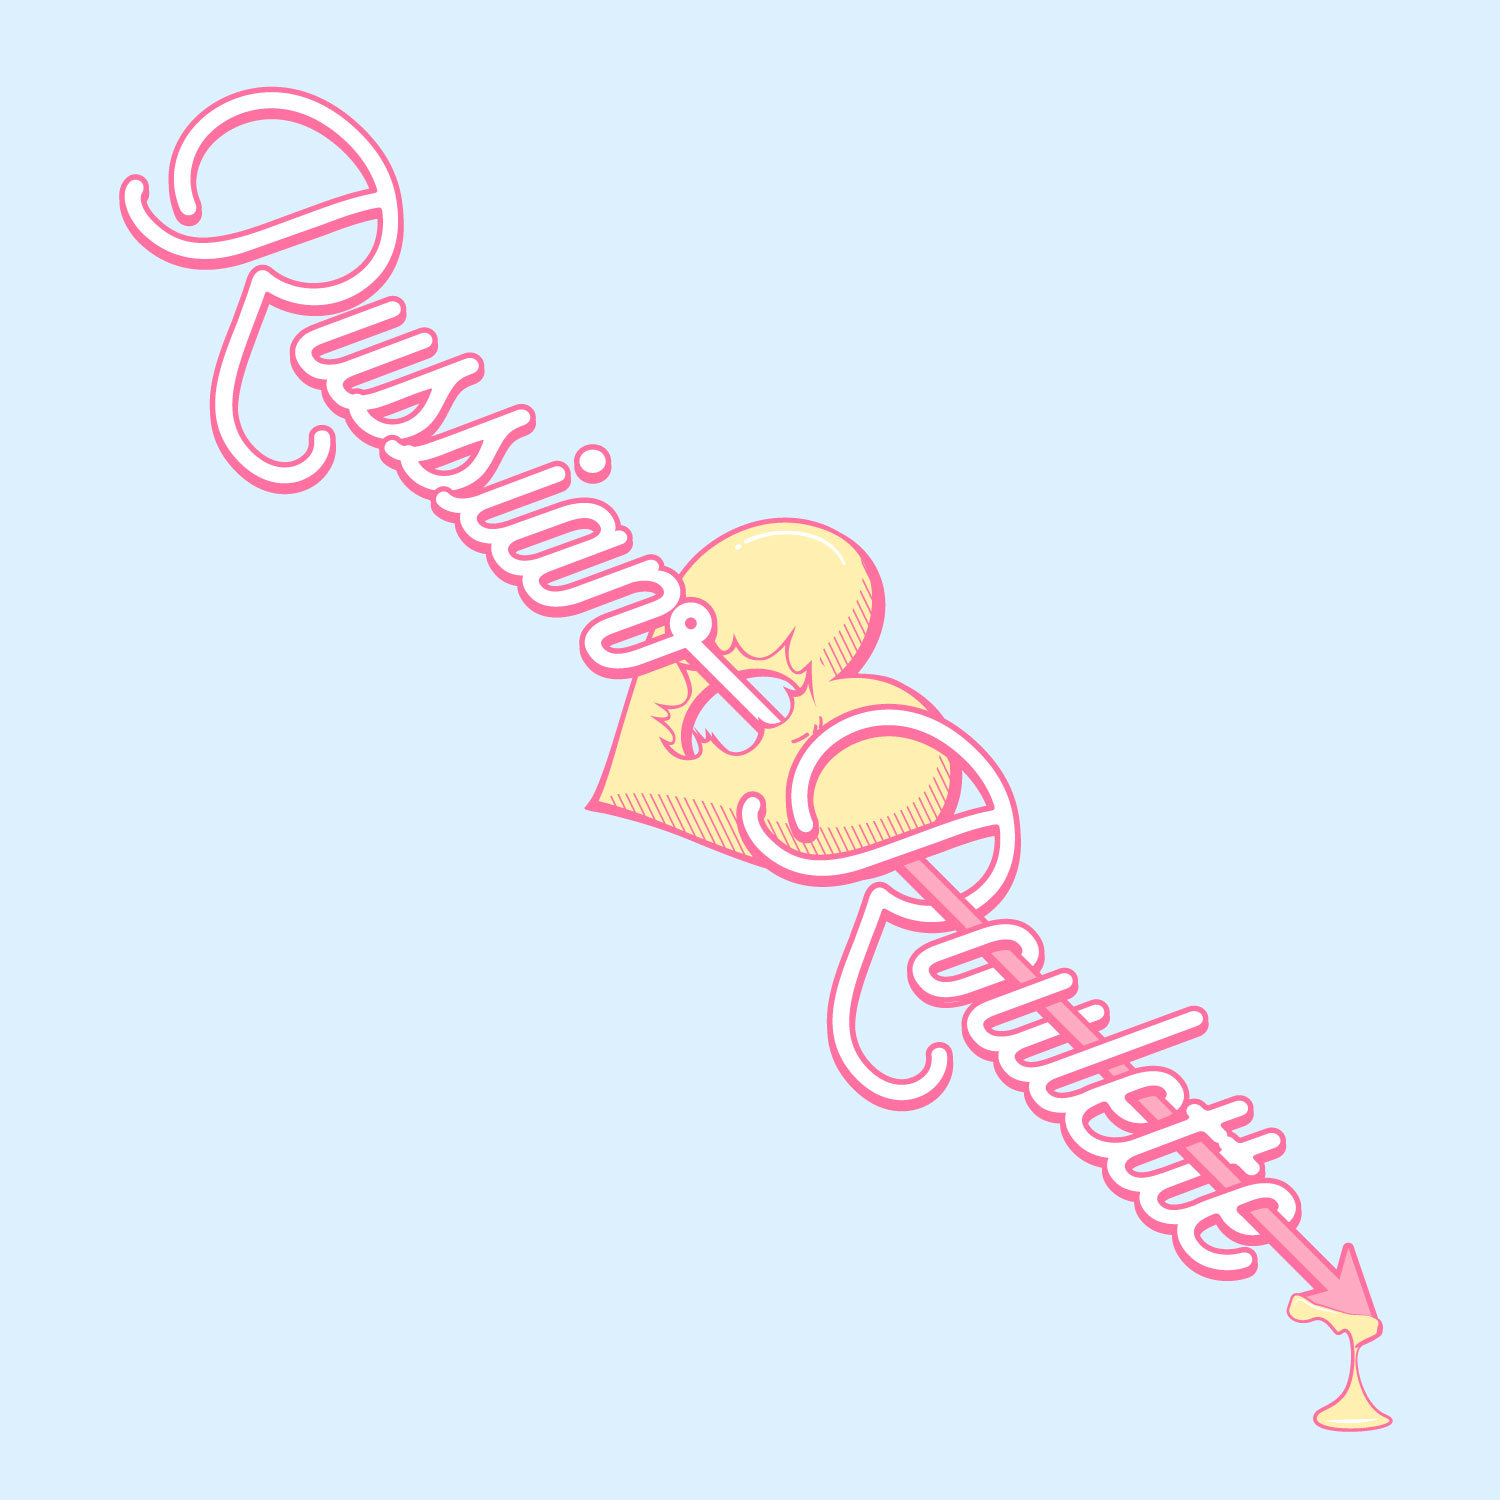 Russian Roulette - Red Velvet Lyrics [Han,Rom,Eng] 